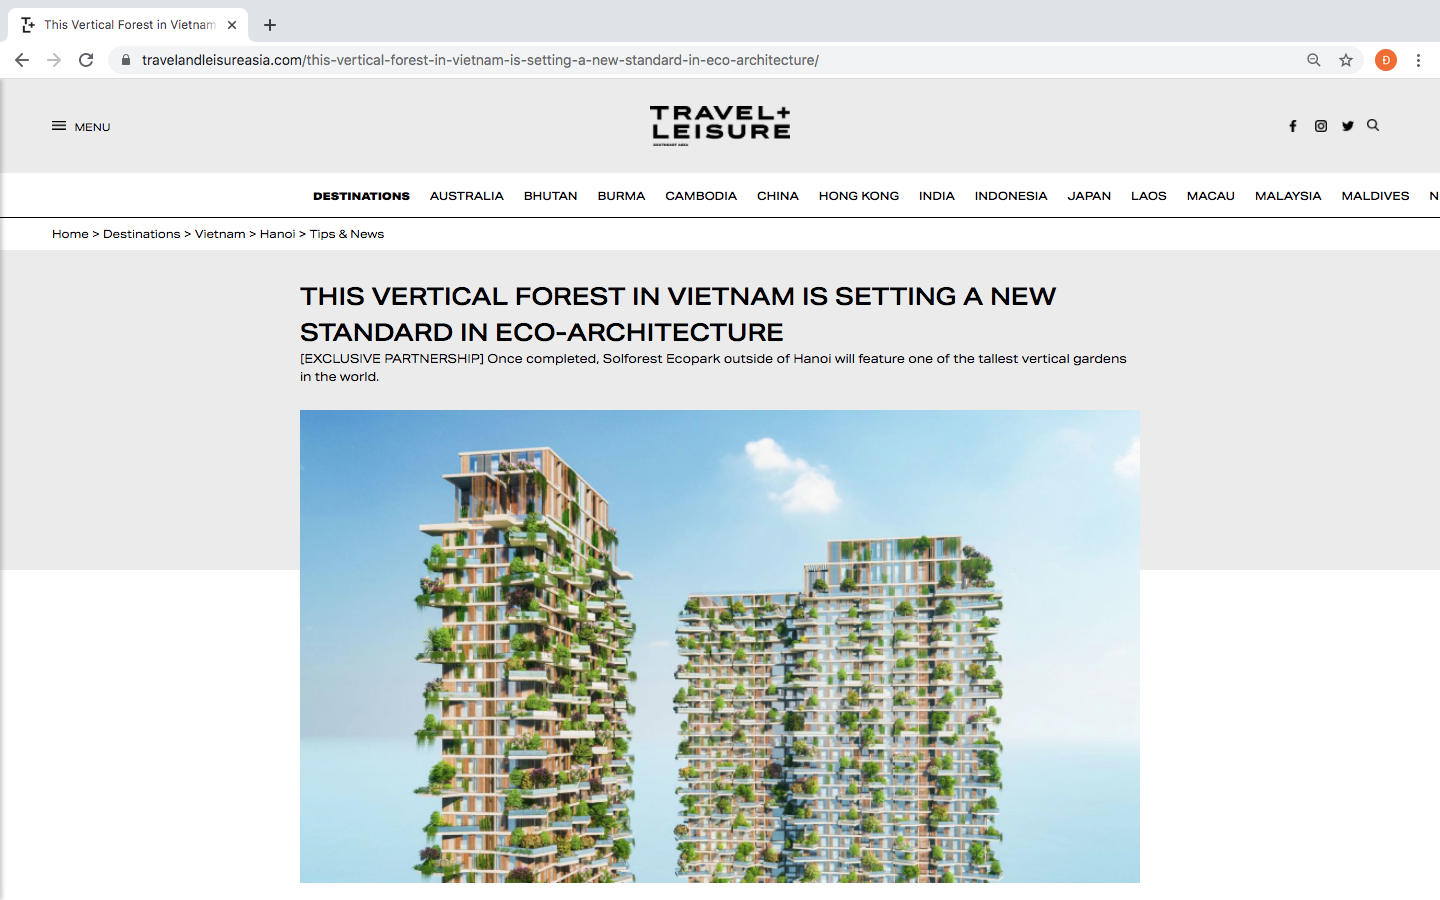 Tạp chí danh tiếng của Mỹ dành vị trí nối bật trang chủ viết về tòa tháp xanh cao nhất của Việt Nam